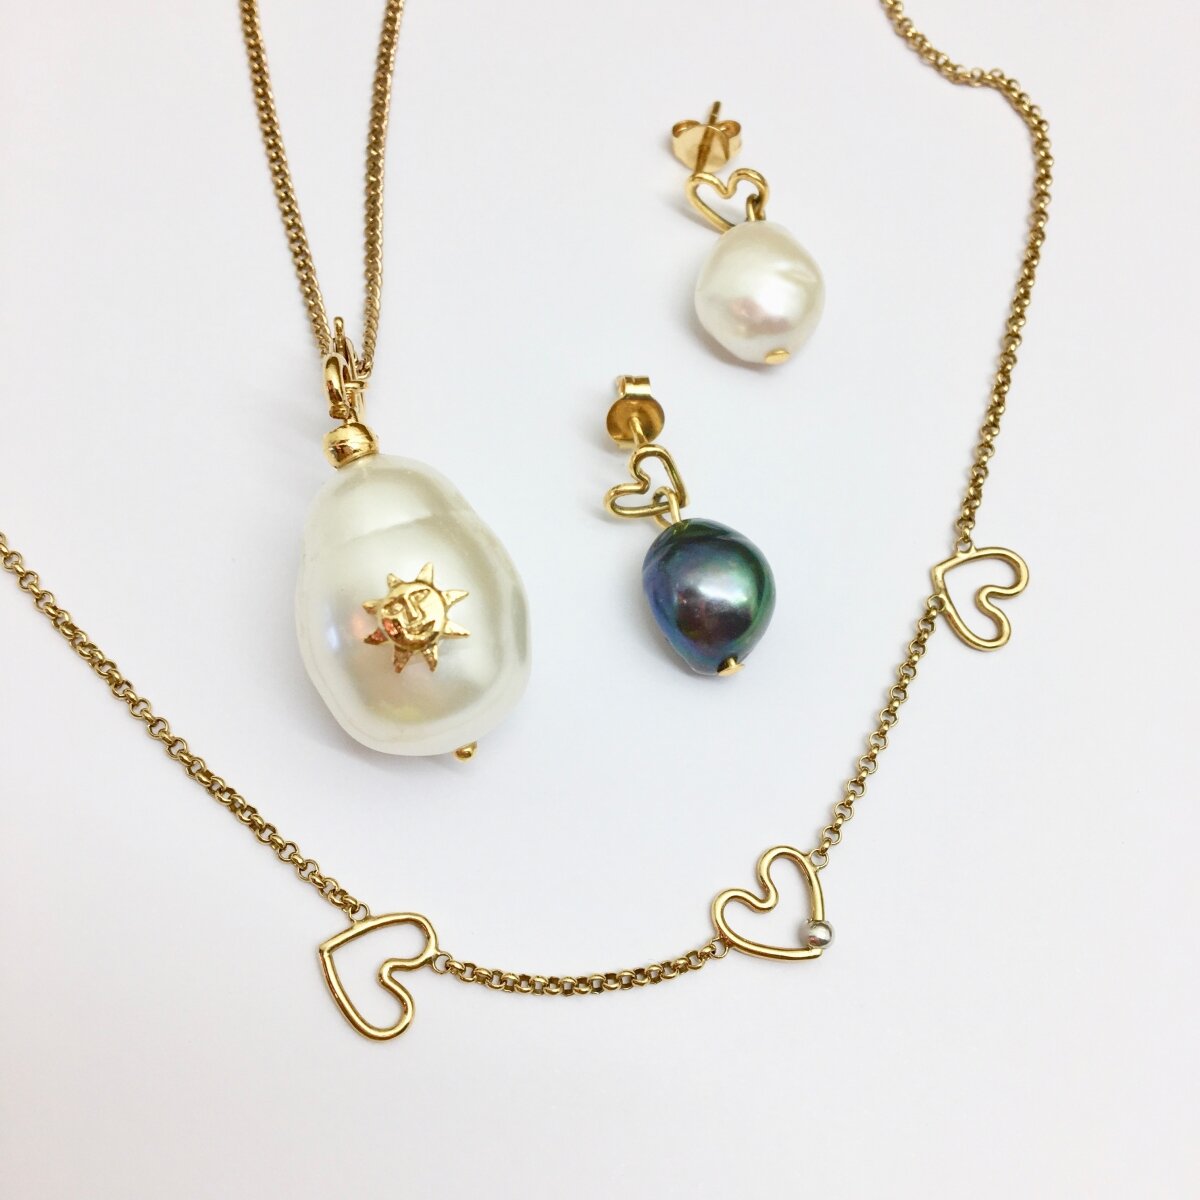 Silvity 804101-S-20 Parure comprenant 1 collier et 1 bracelet en perles de culture deau douce pour femme 40-42 cm 50 mm Blanc/argenté 